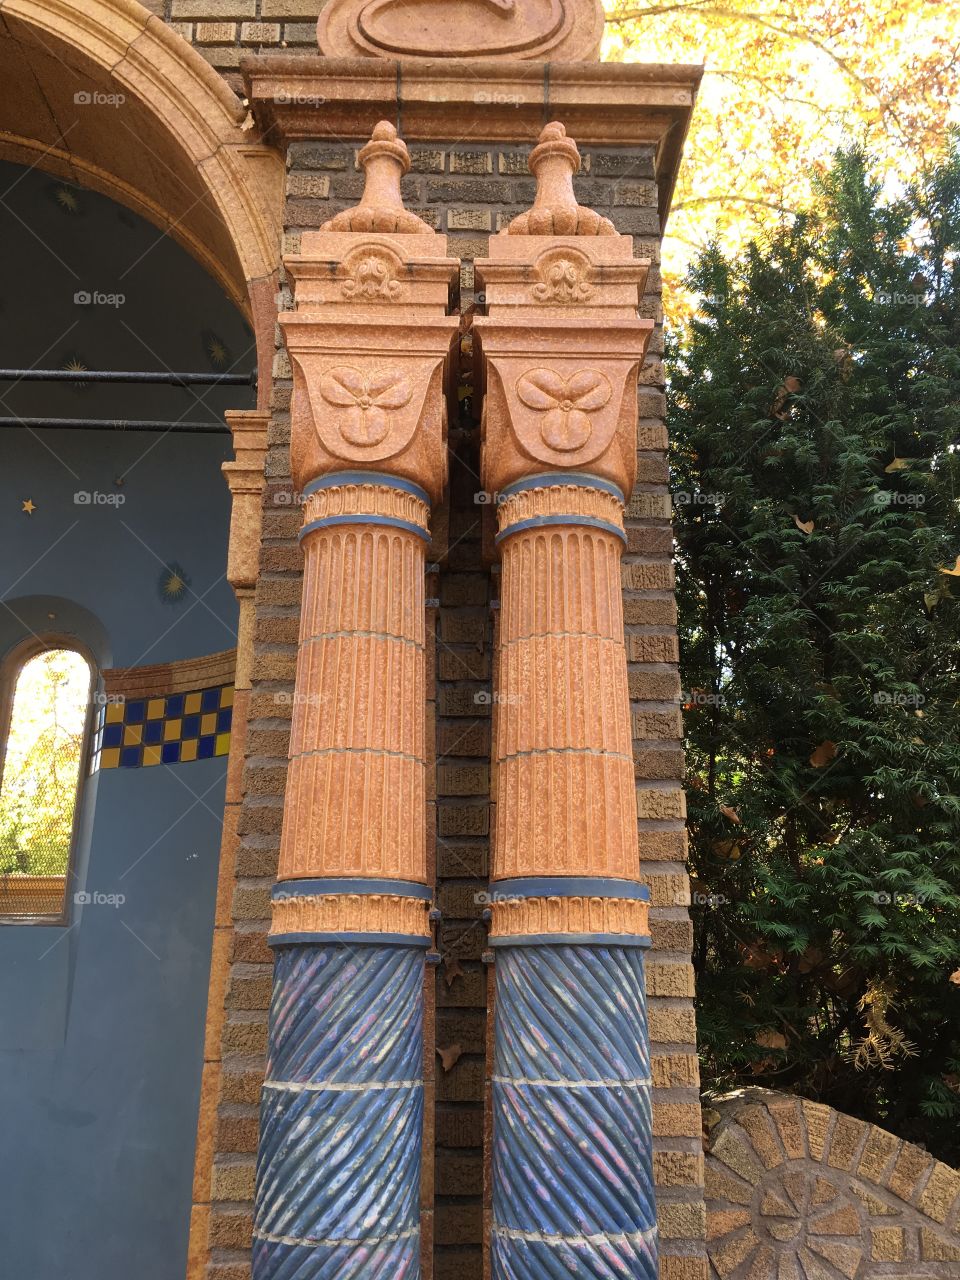 Columns in the garden